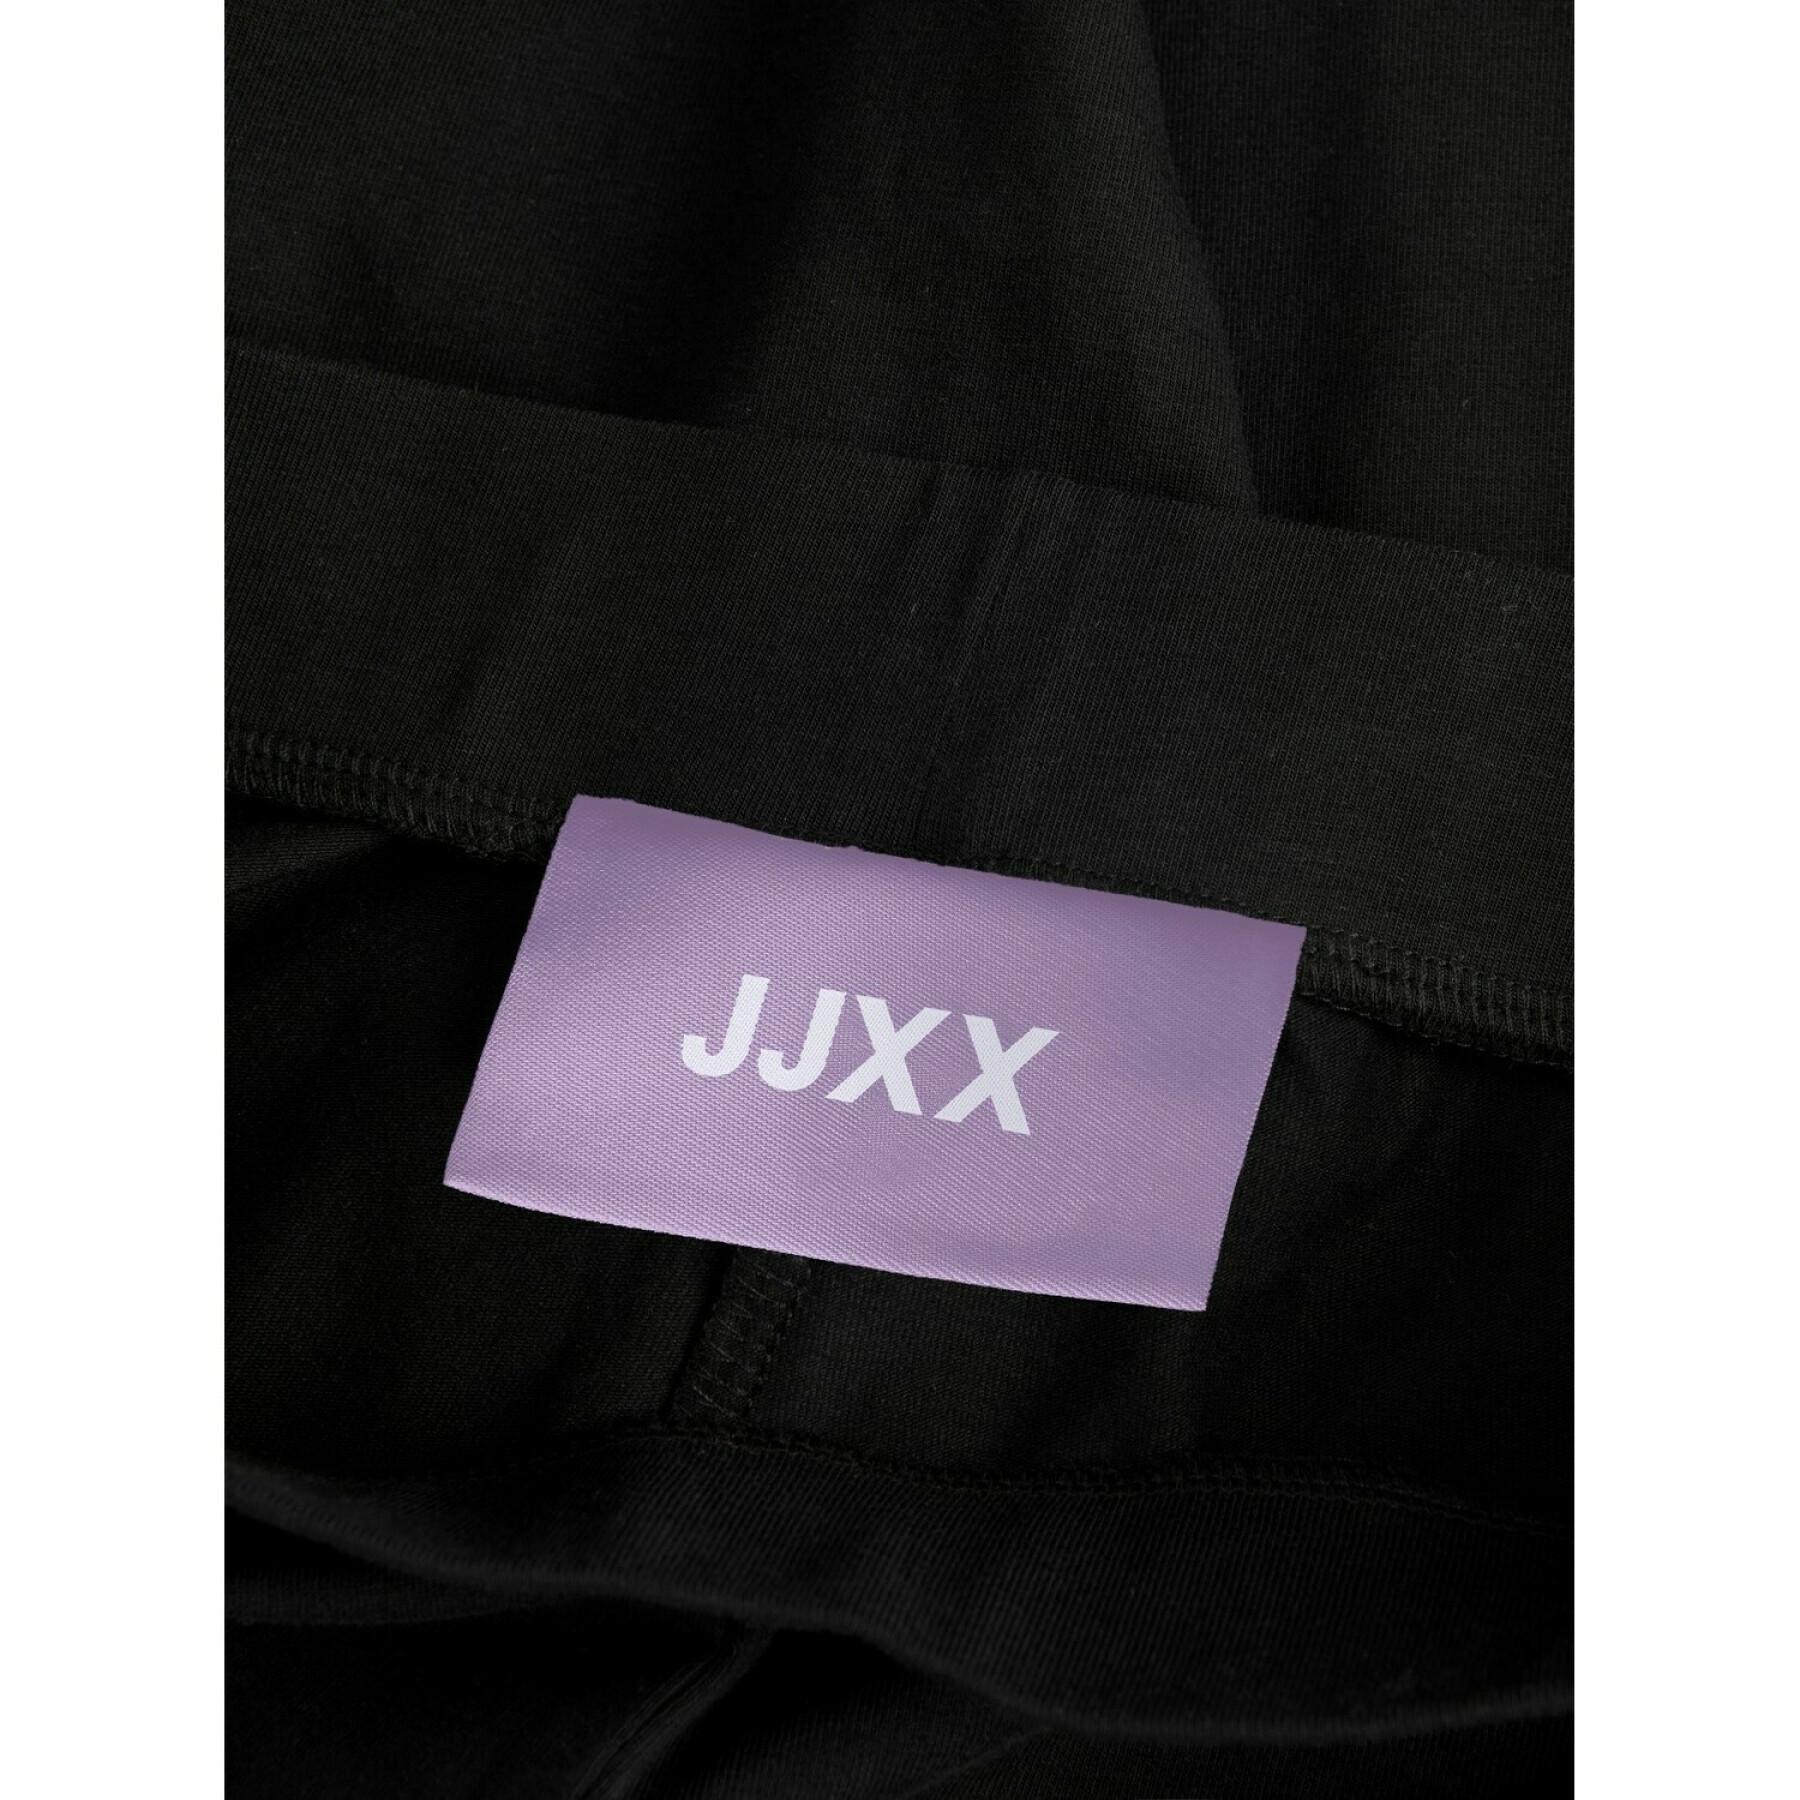 Women's leggings JJXX alba